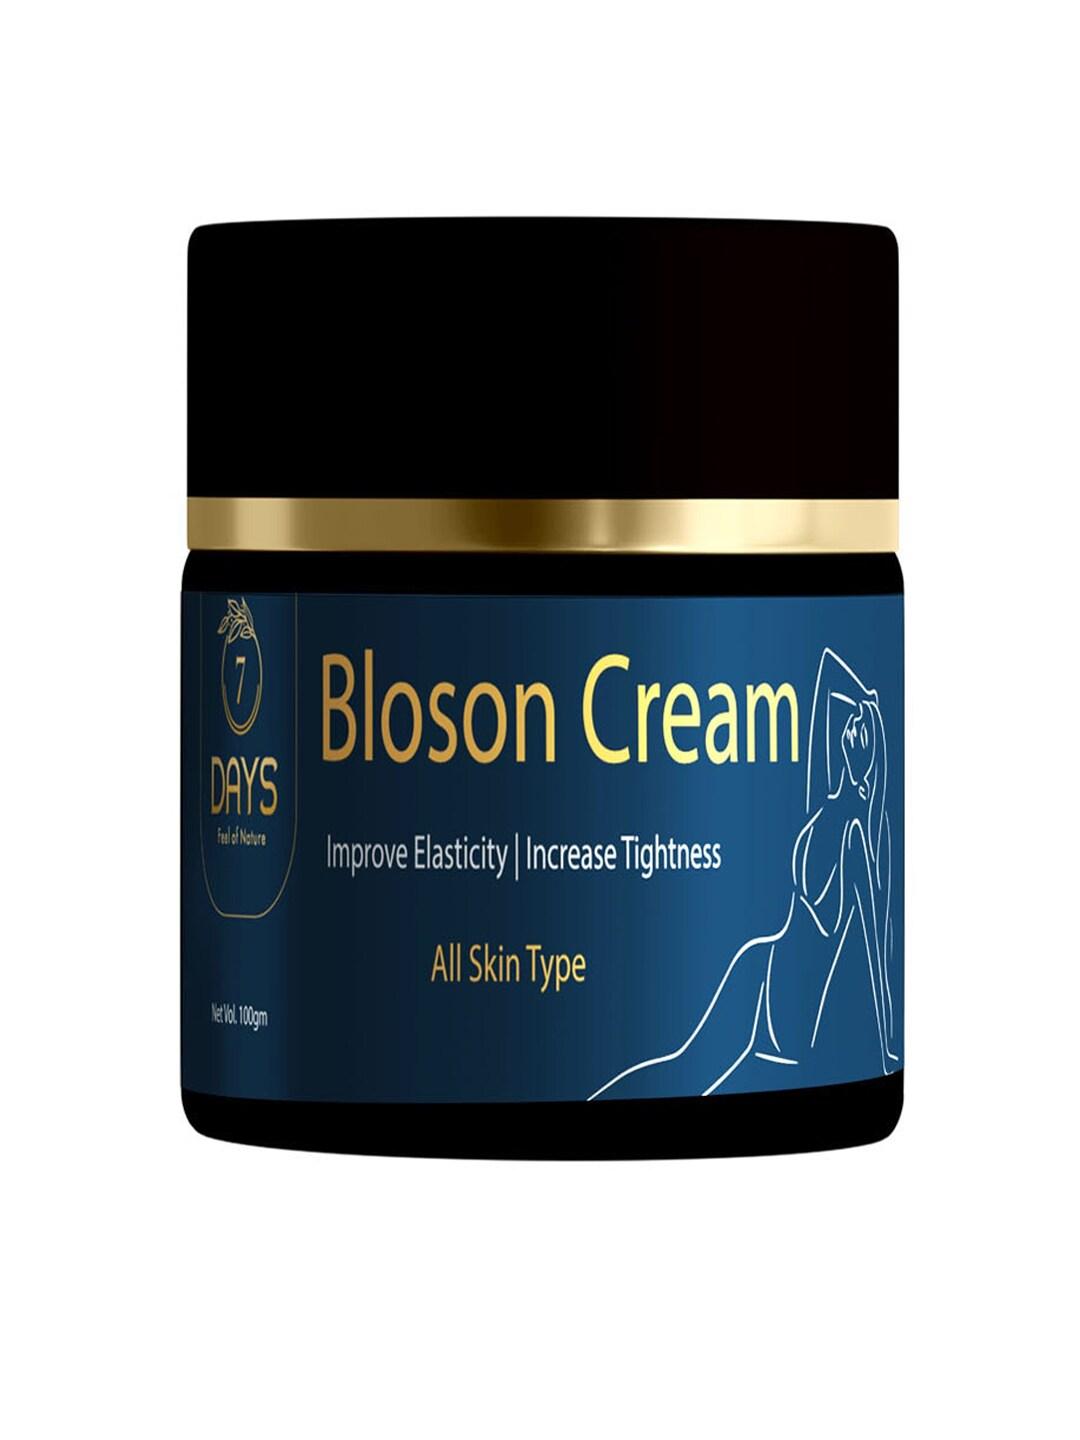 7 DAYS Bloson Enhancement Bust Massage Shaping & Firming Toner Cream - 100g